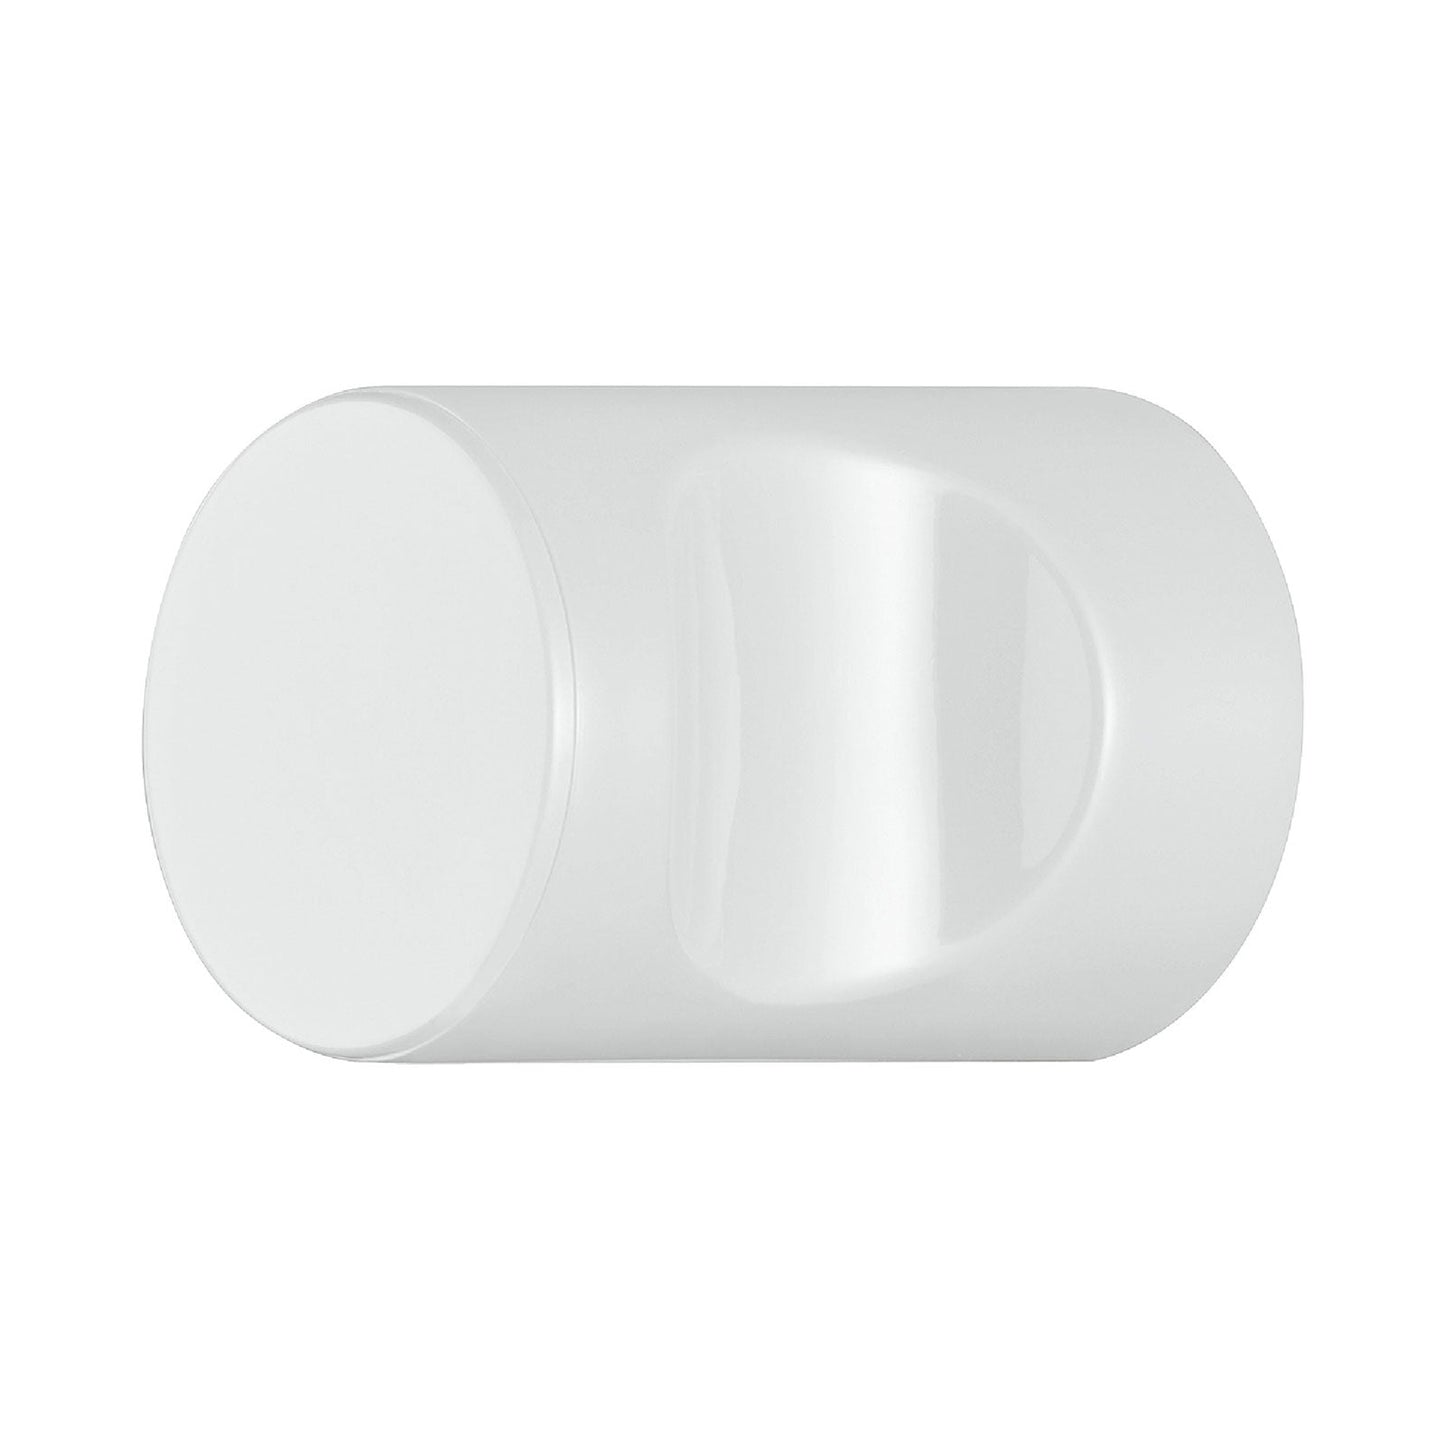 Hafele HEWI Polyamide Cabinet Knob - Signal White